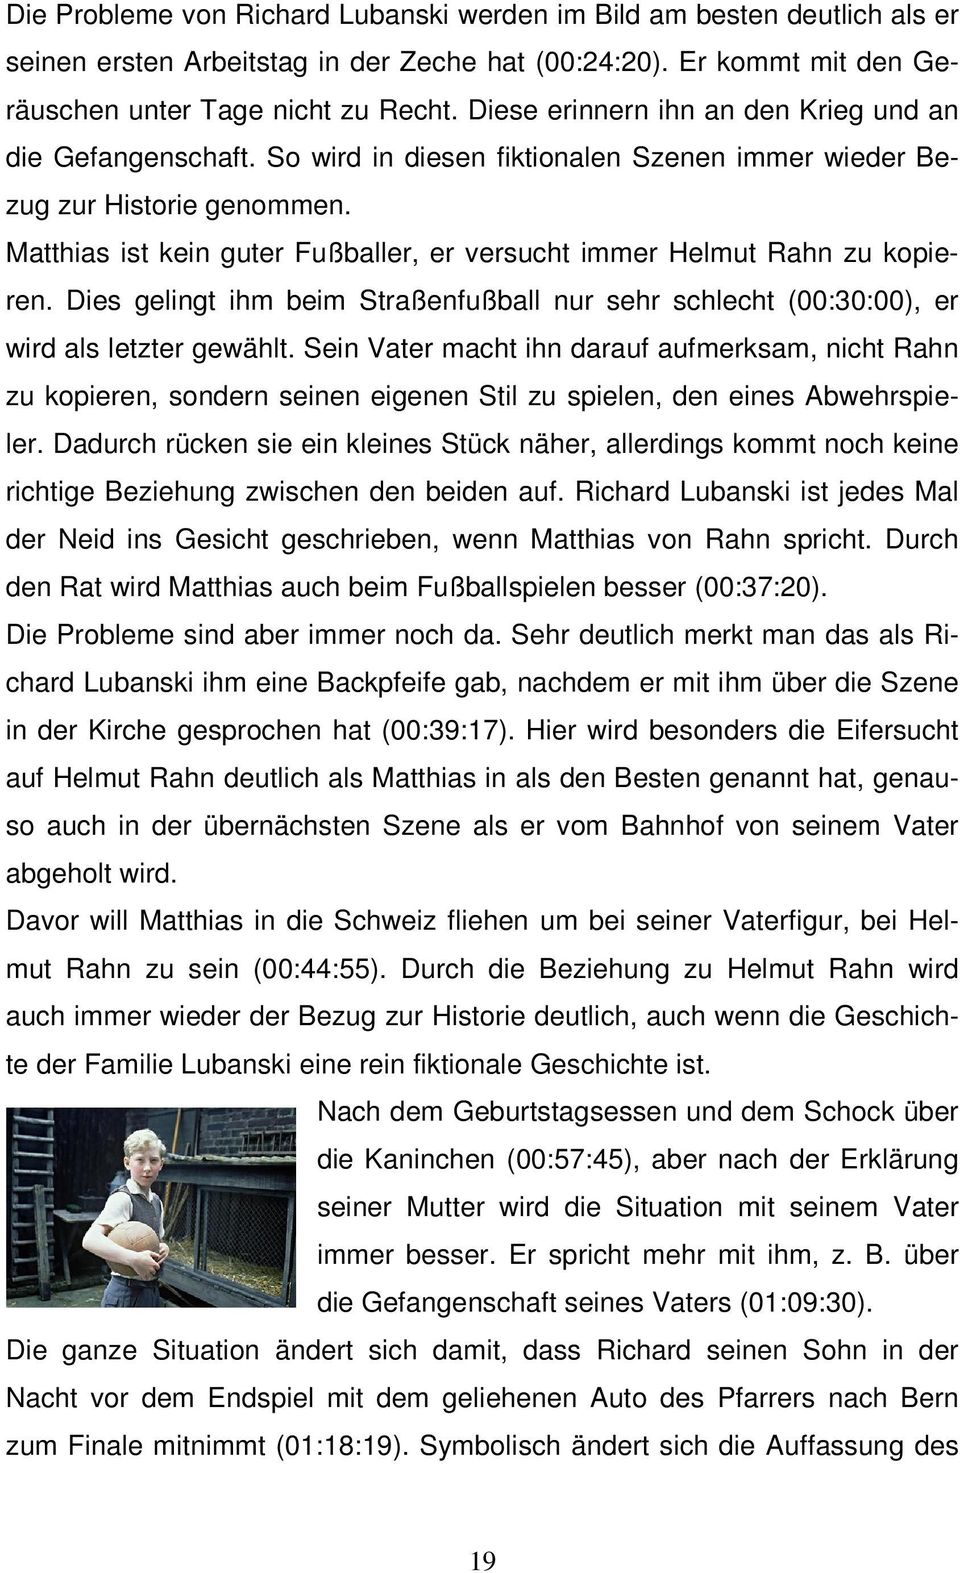 Matthias ist kein guter Fußballer, er versucht immer Helmut Rahn zu kopieren. Dies gelingt ihm beim Straßenfußball nur sehr schlecht (00:30:00), er wird als letzter gewählt.